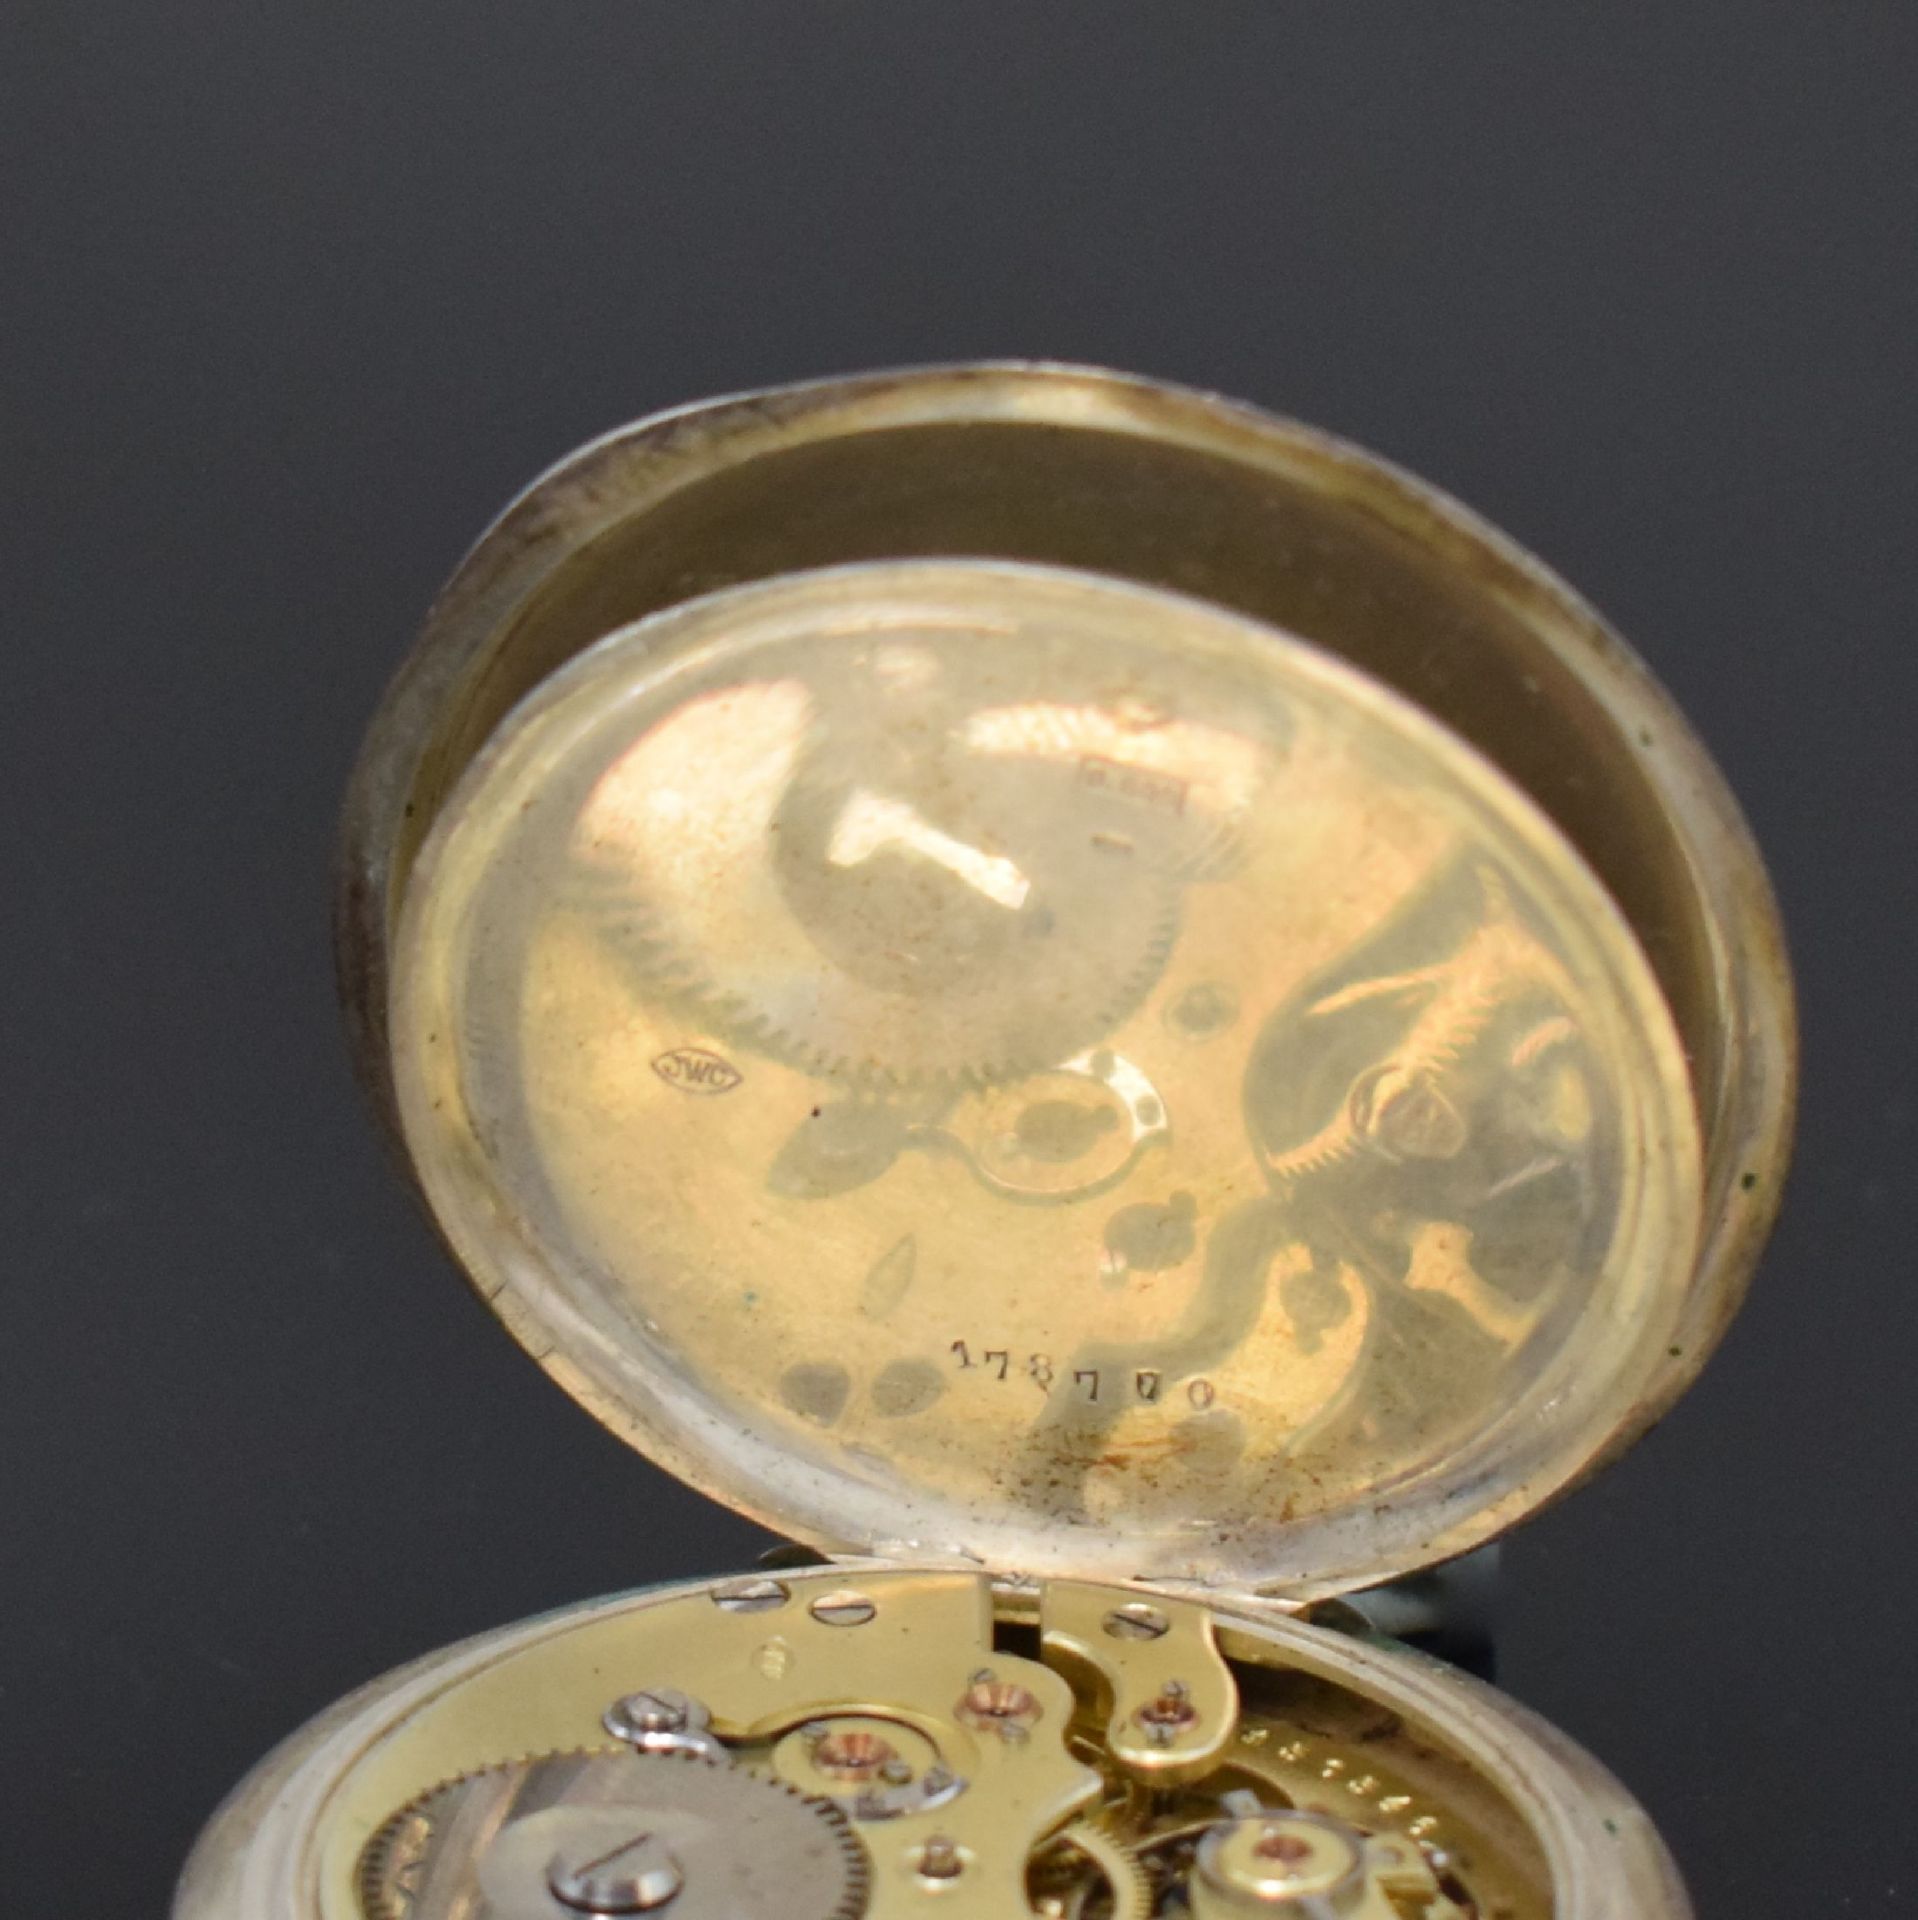 IWC Offene Taschenuhr in 800er Silber, Schweiz um 1900, - Image 7 of 9